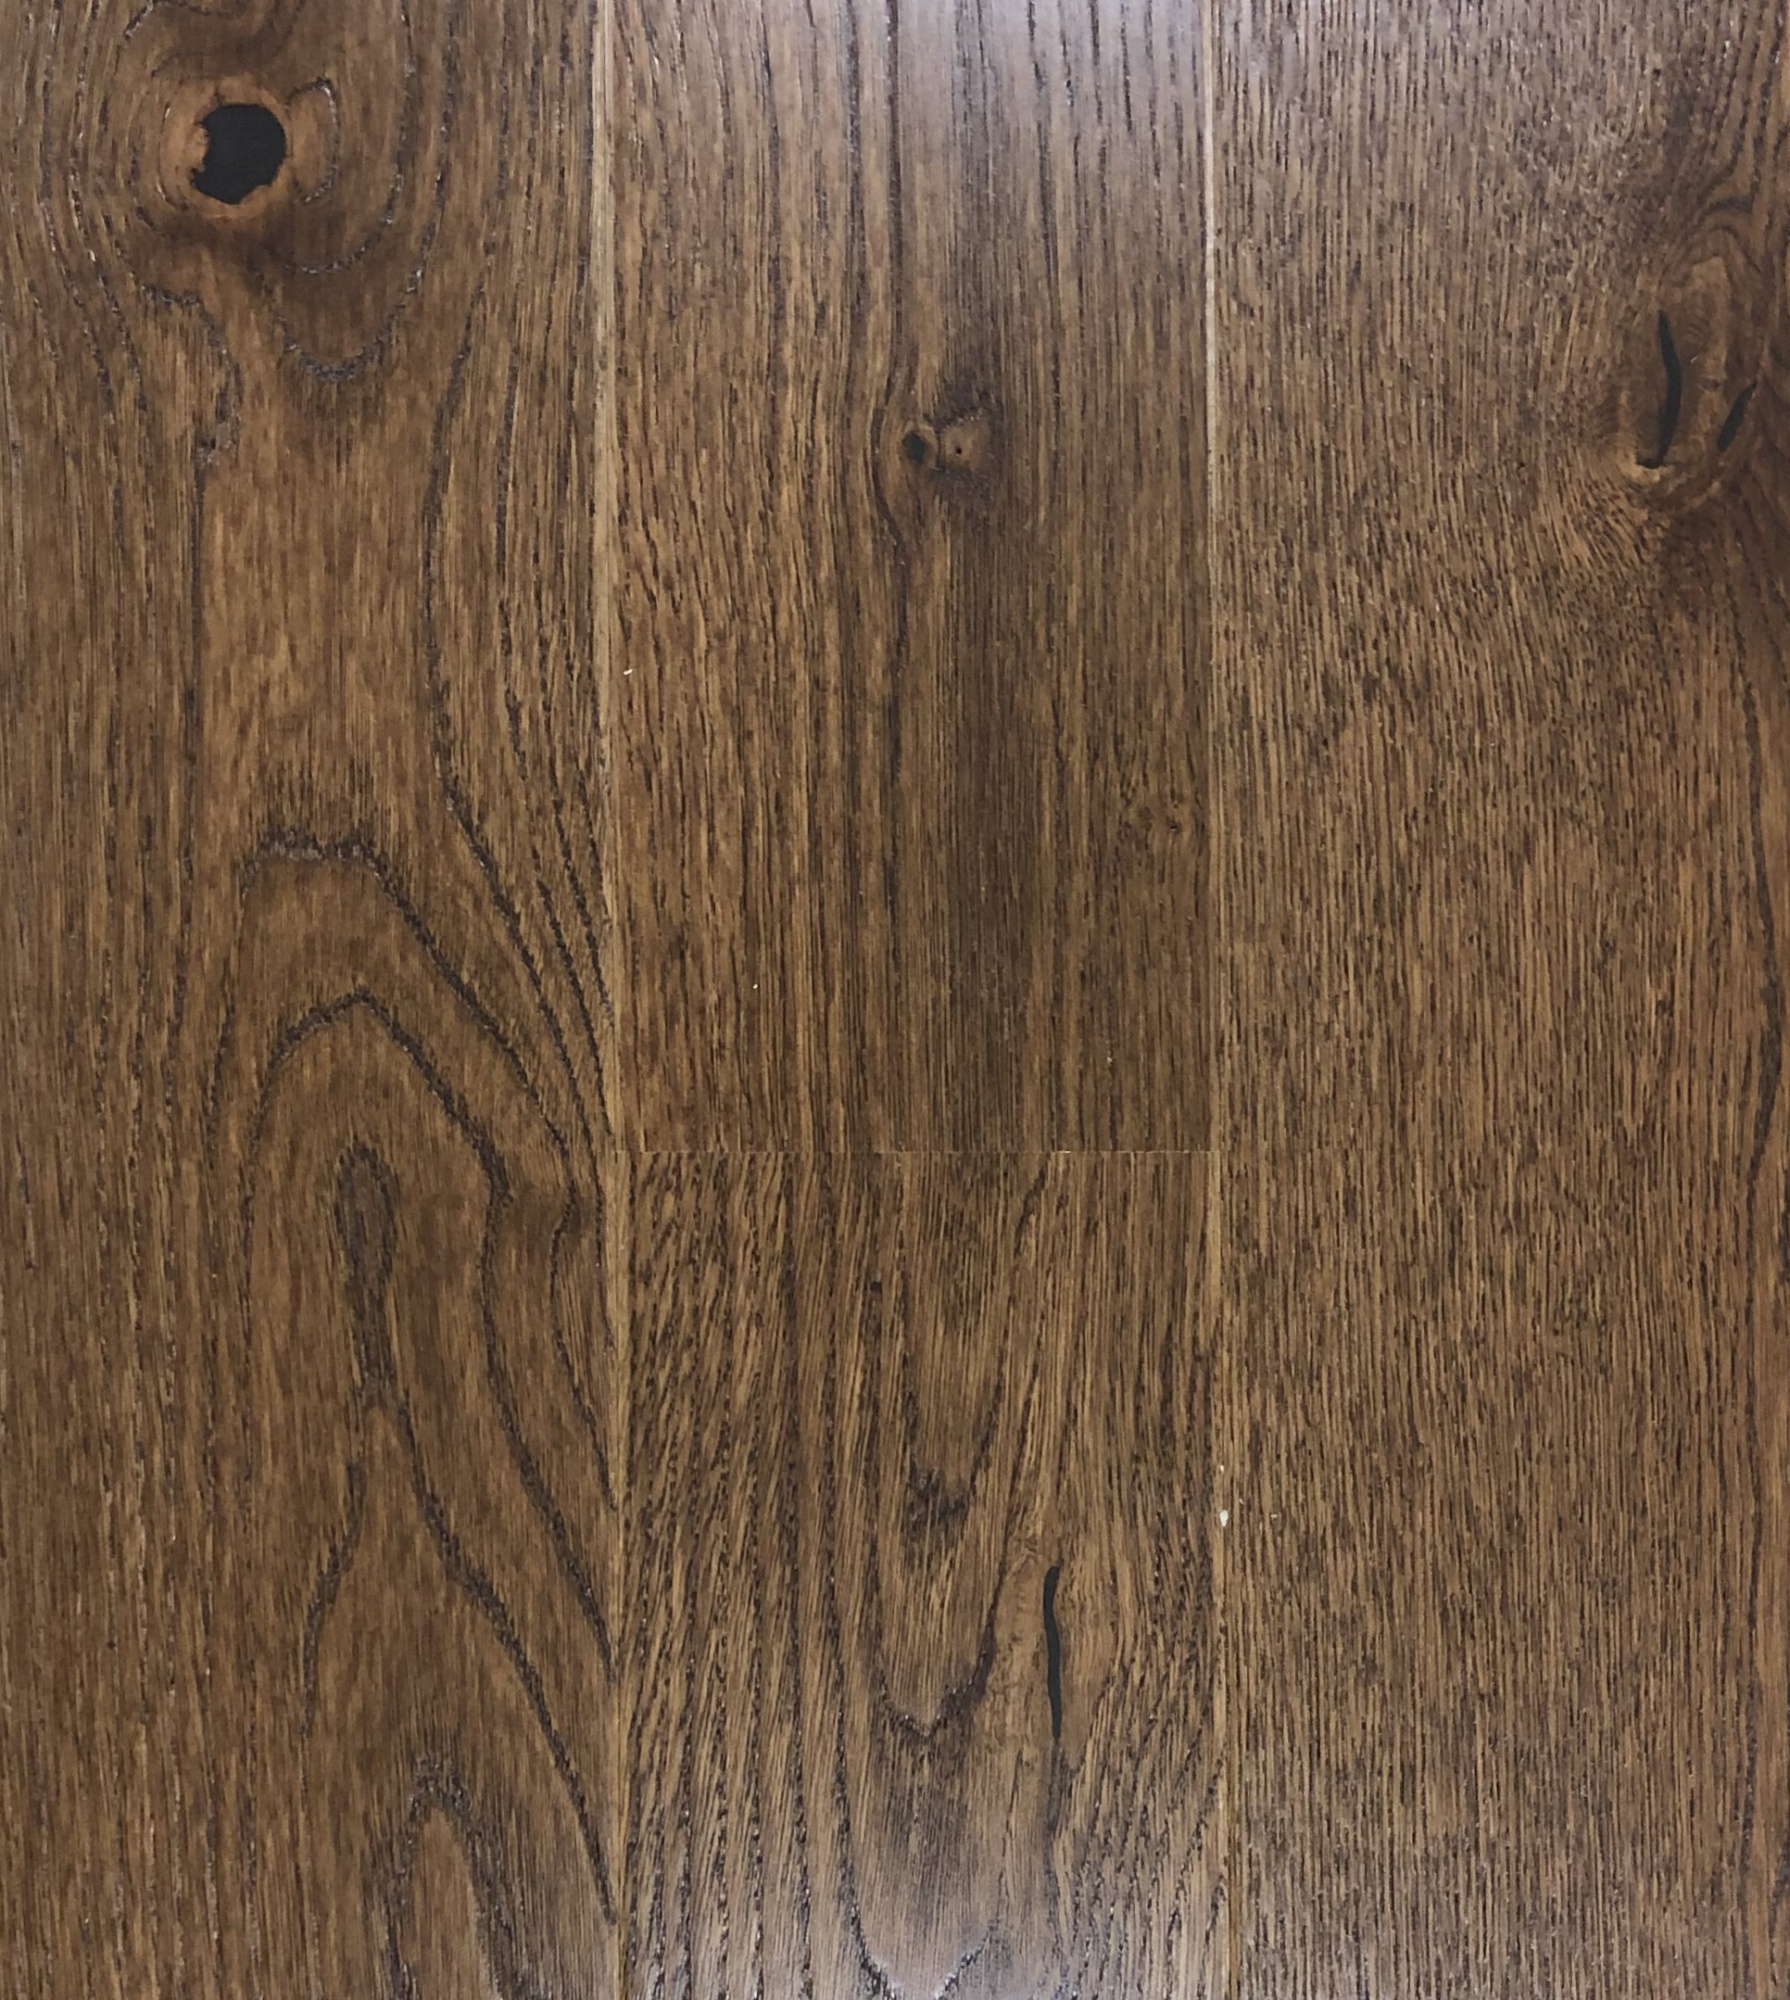 Паркетная доска OAK TORNADO (Дуб Торнадо) 13,2 мм из коллекции Timber от  производителя Tarkett: купить в Москве по выгодной цене